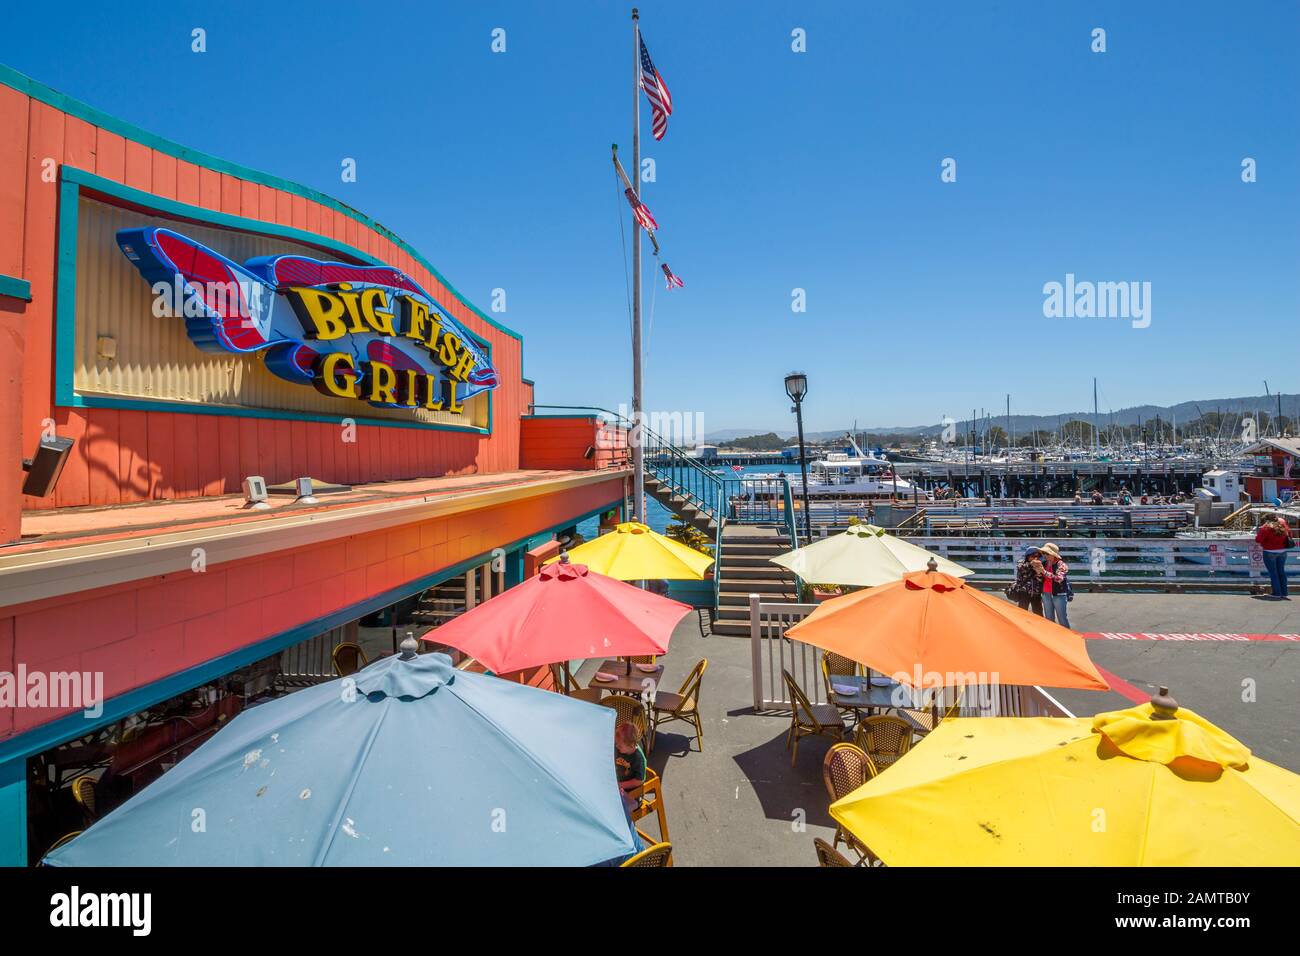 Big Fish Grill am Fisherman's Wharf Pier, Monterey Bay, Halbinsel, Monterey, Kalifornien, Vereinigte Staaten von Amerika, Nordamerika Stockfoto